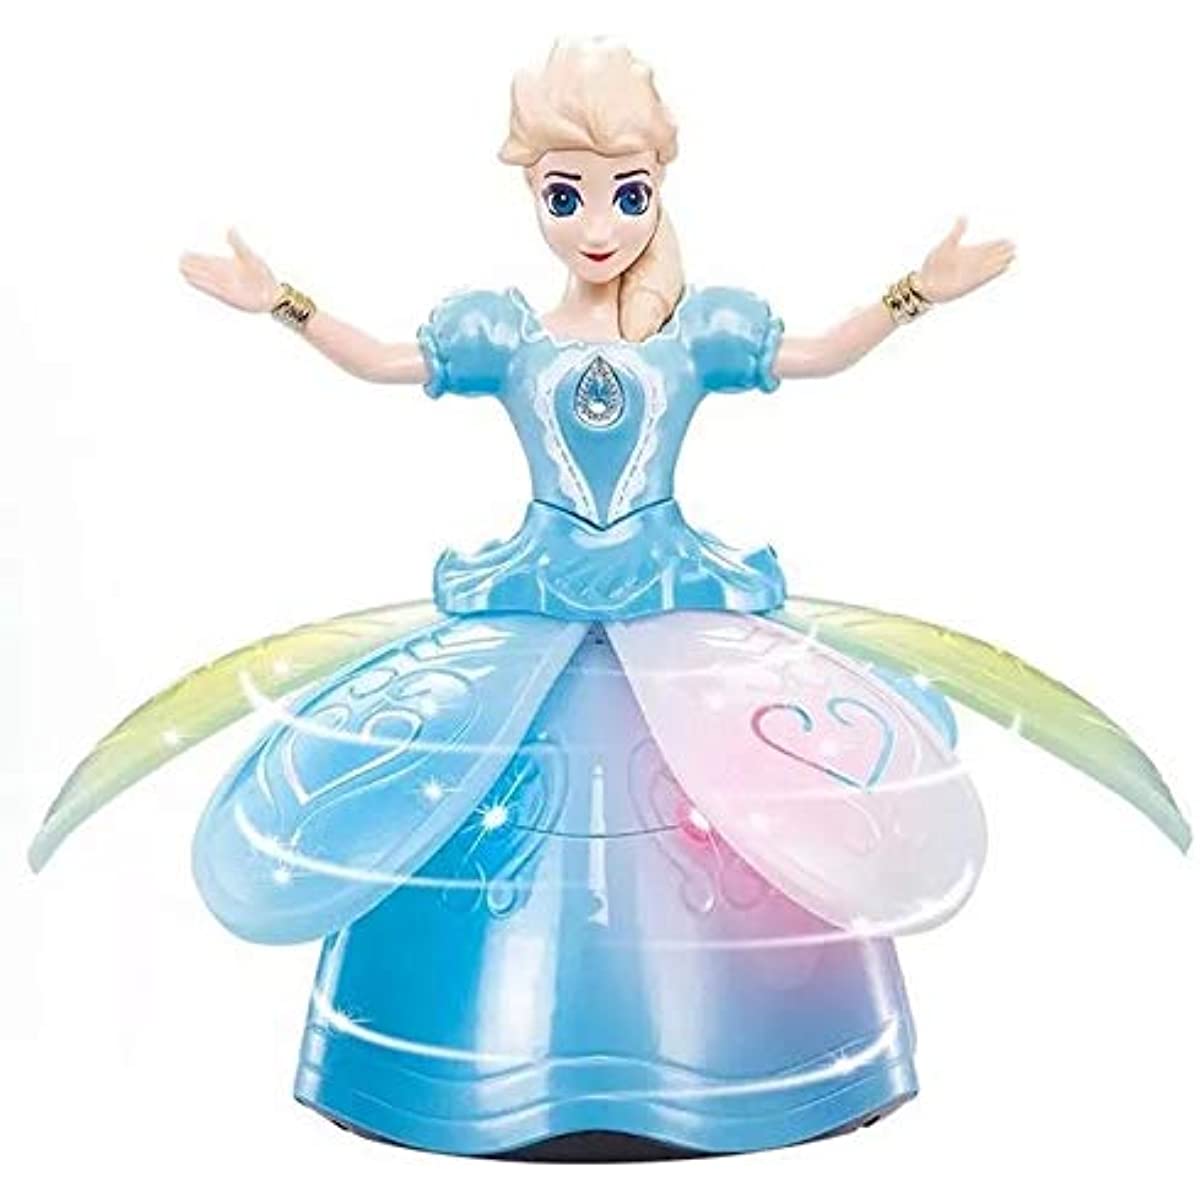 Батарея, управляемая Princess Dolls Toys for Girls Dance Dancing Dancing Coll, пение и вращение